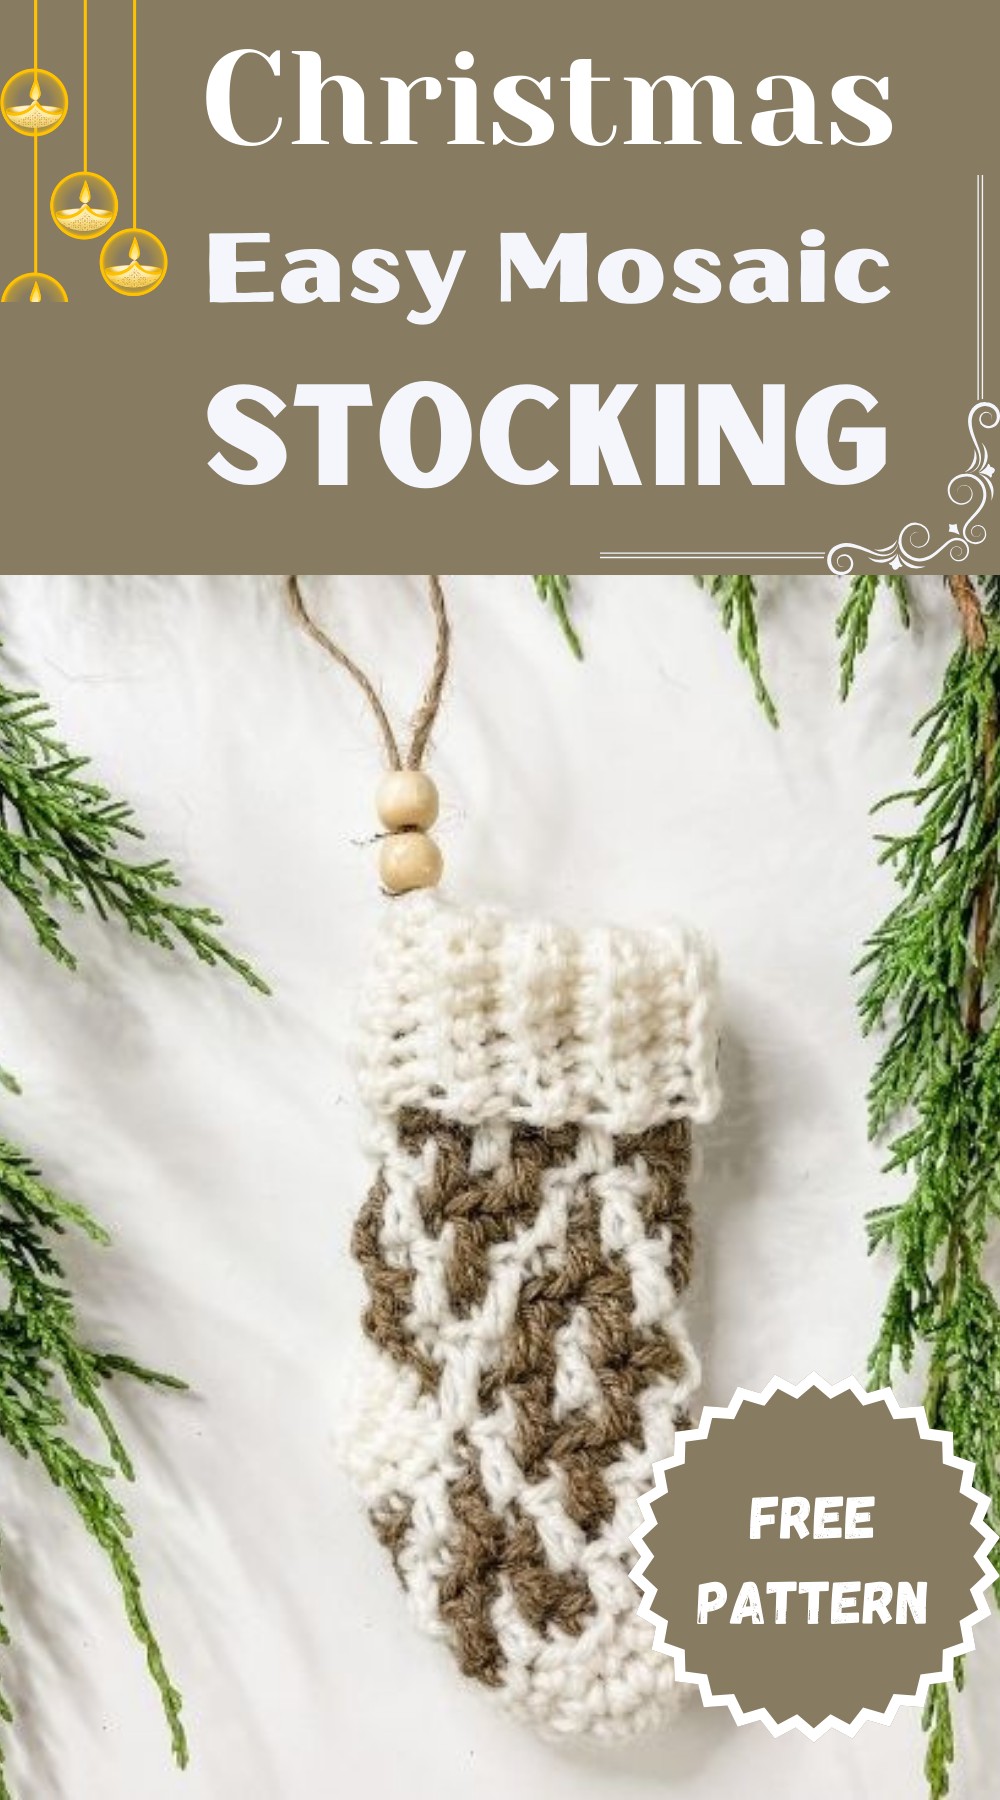 Mosaic Crochet Christmas Stocking Pattern